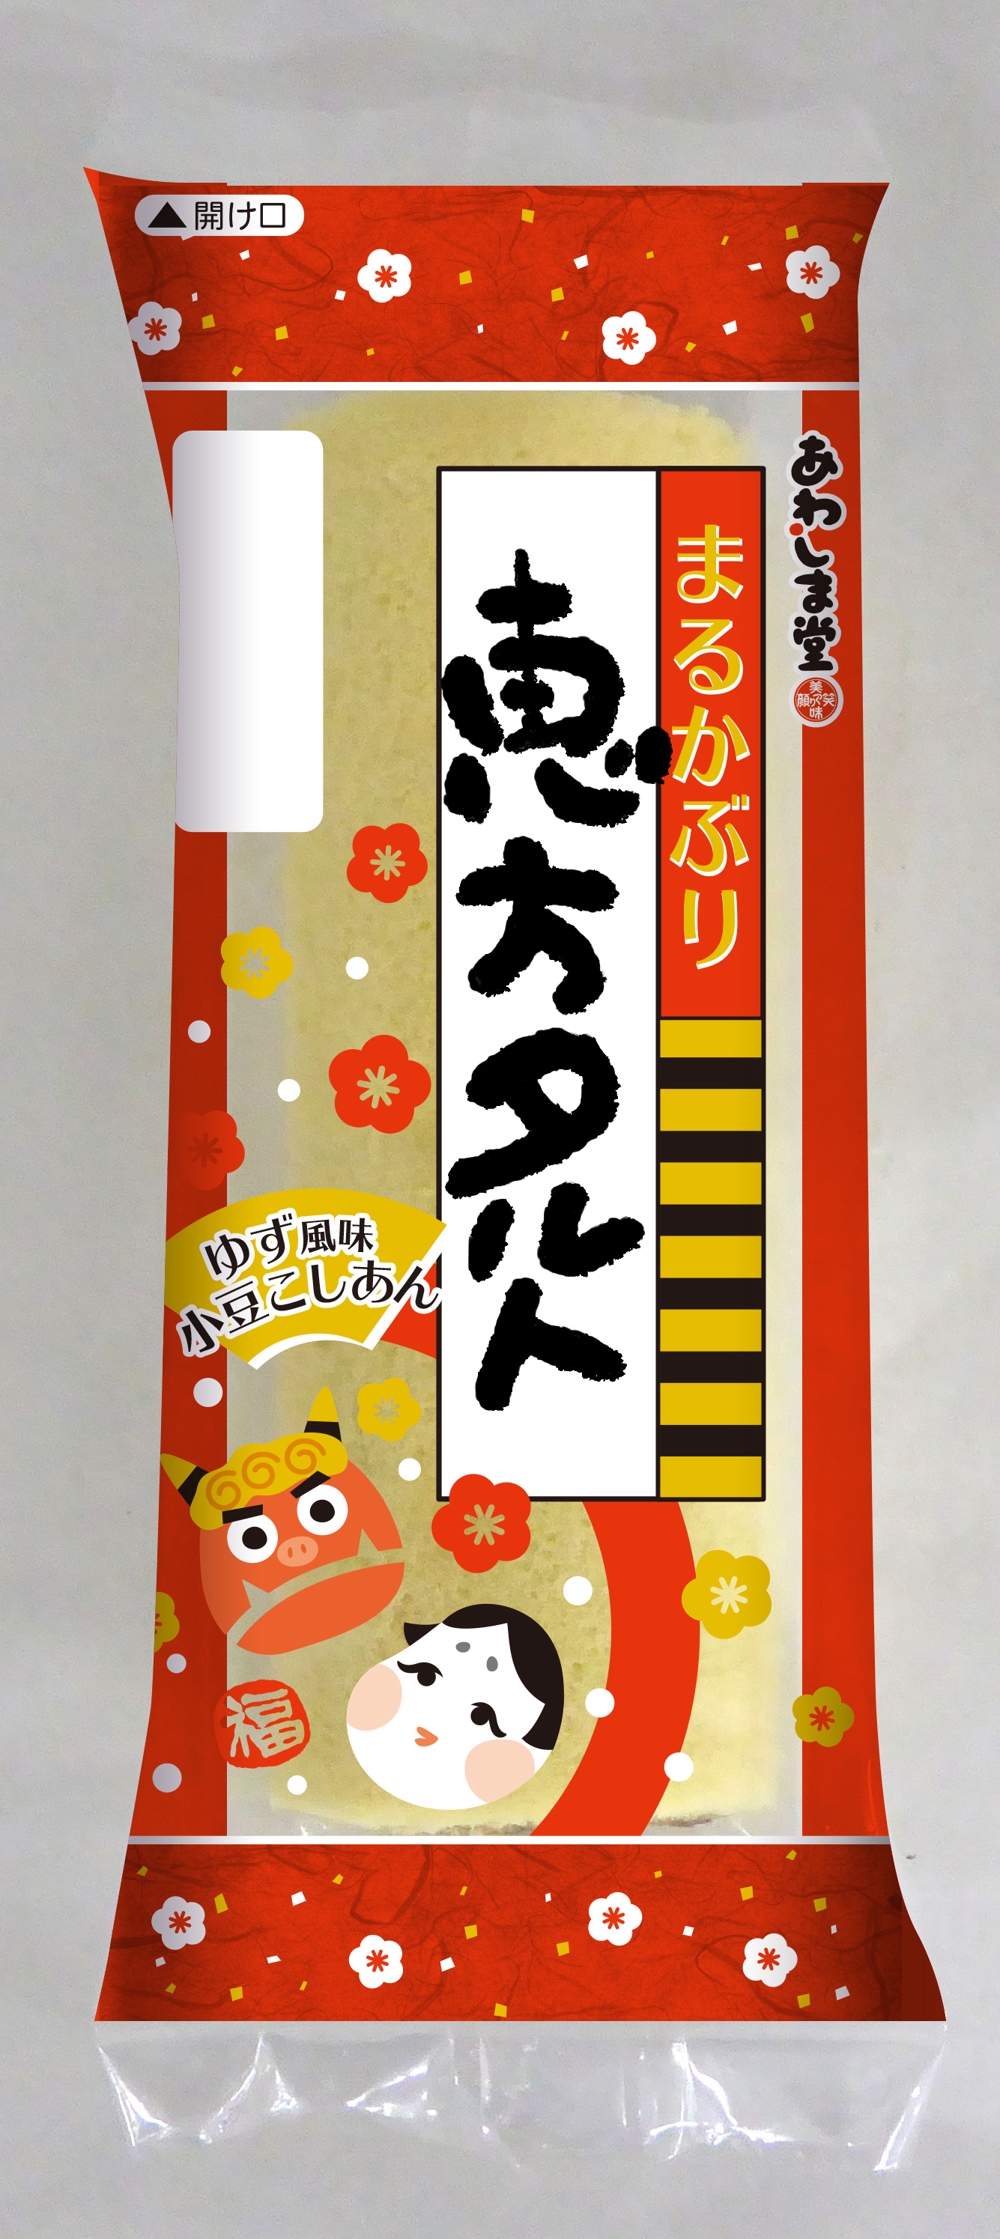 和菓子のパッケージデザイン 『恵方タルト』